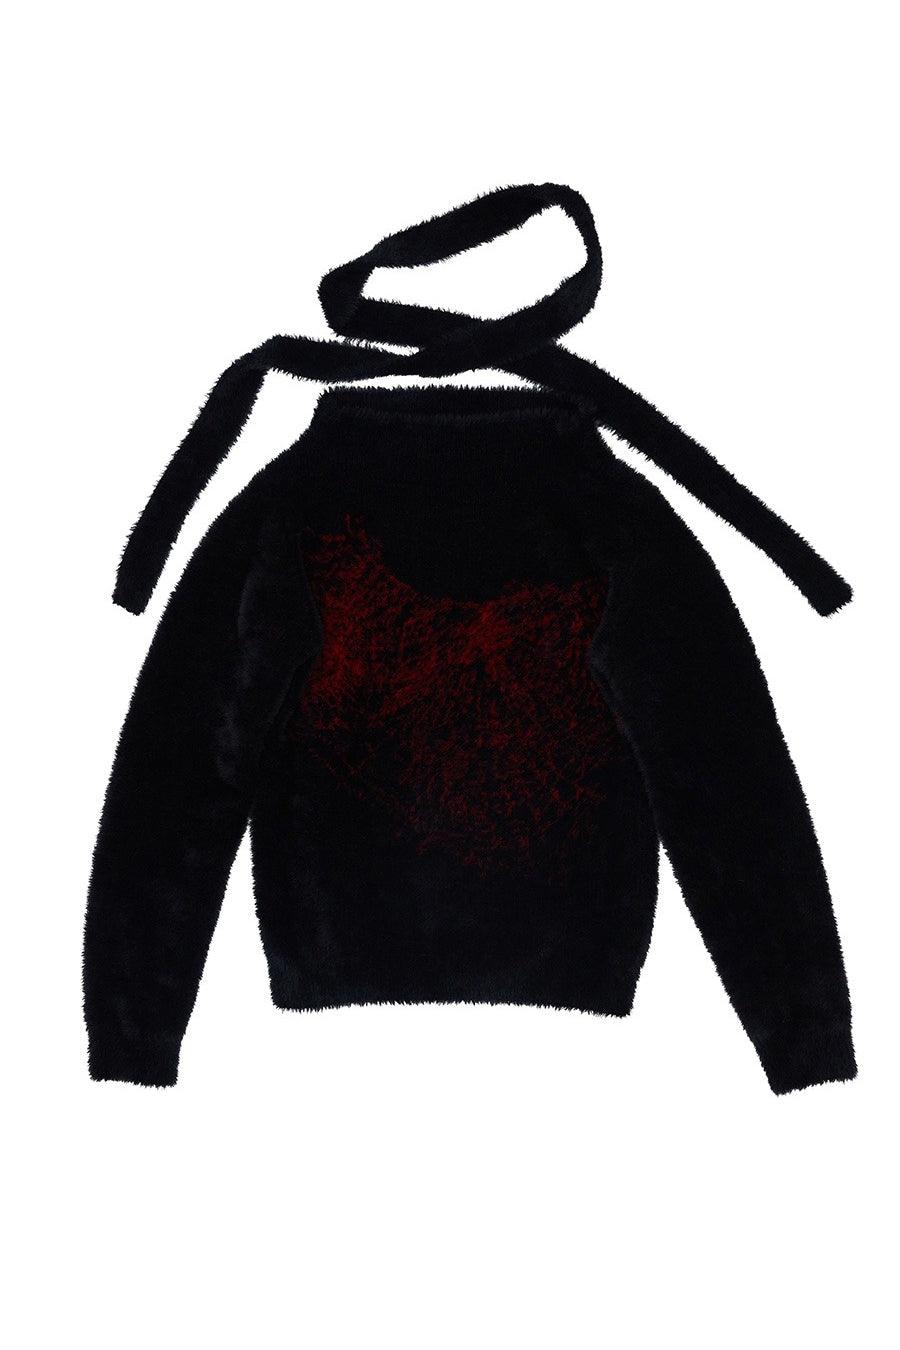 Off-Shoulder Plush Sweater Black - Pixie Rebels